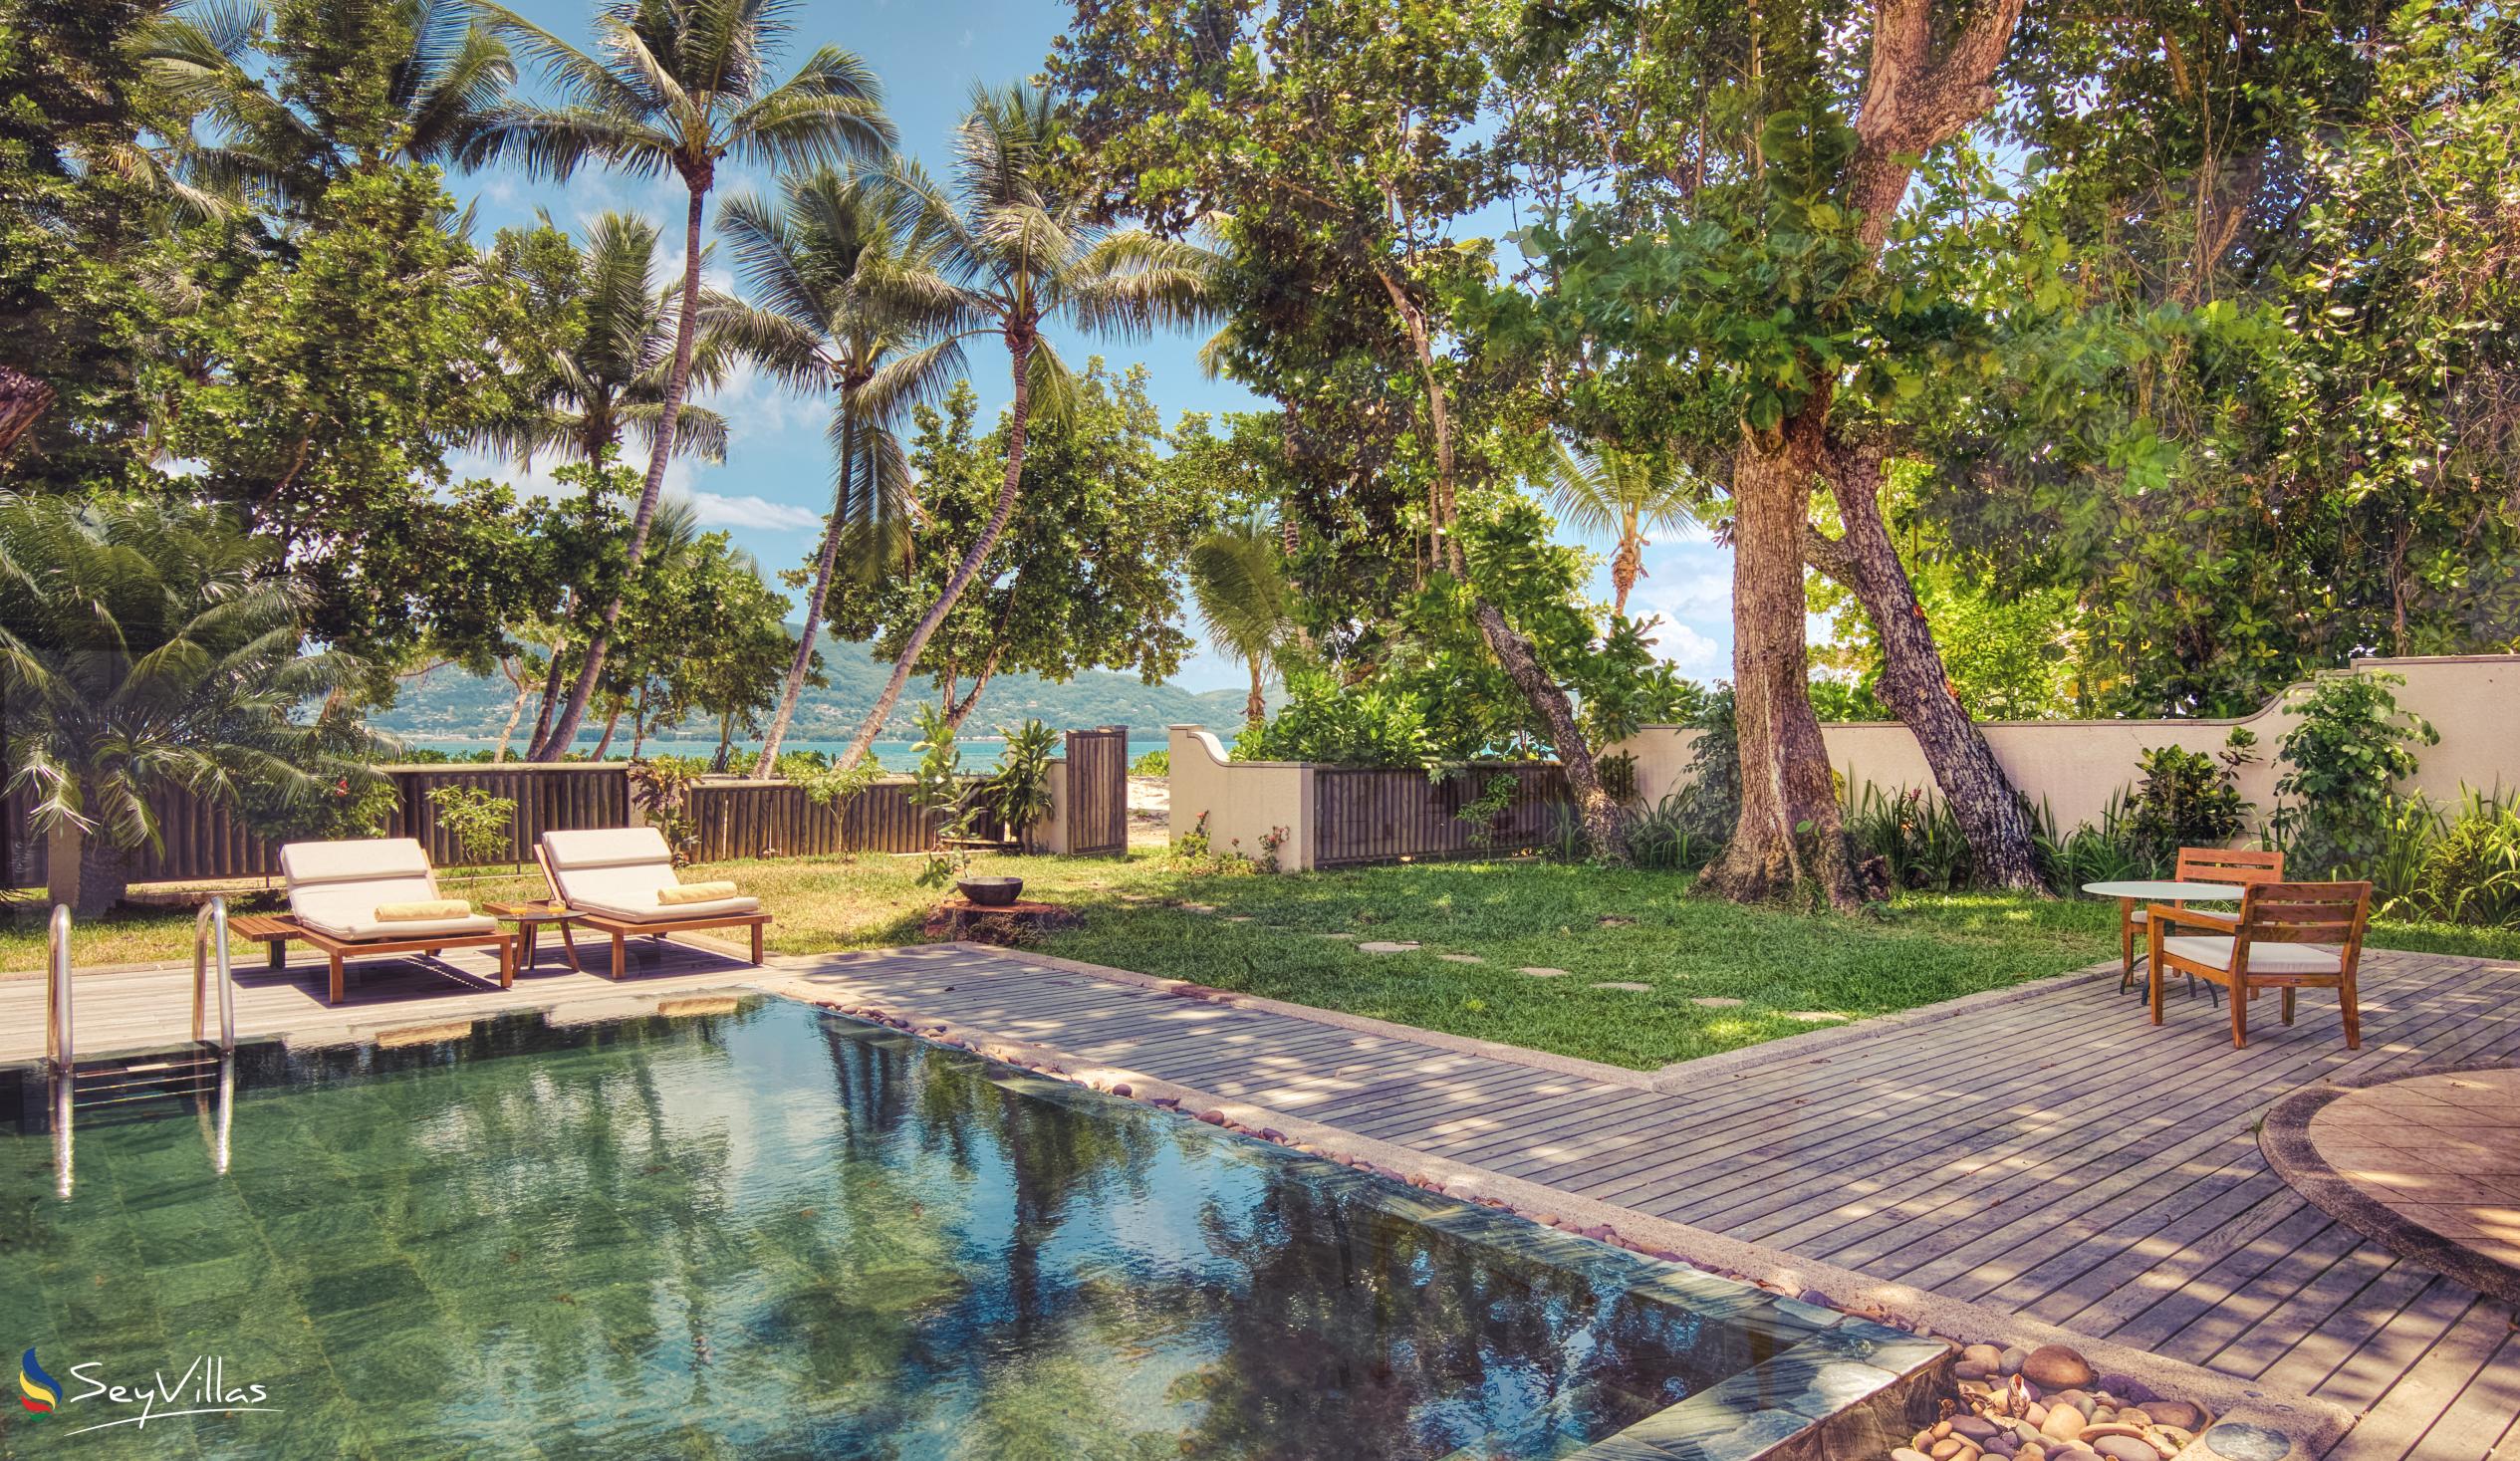 Foto 138: Club Med Seychelles - Suite con vista mare e piscina privata - Saint Anne (Seychelles)